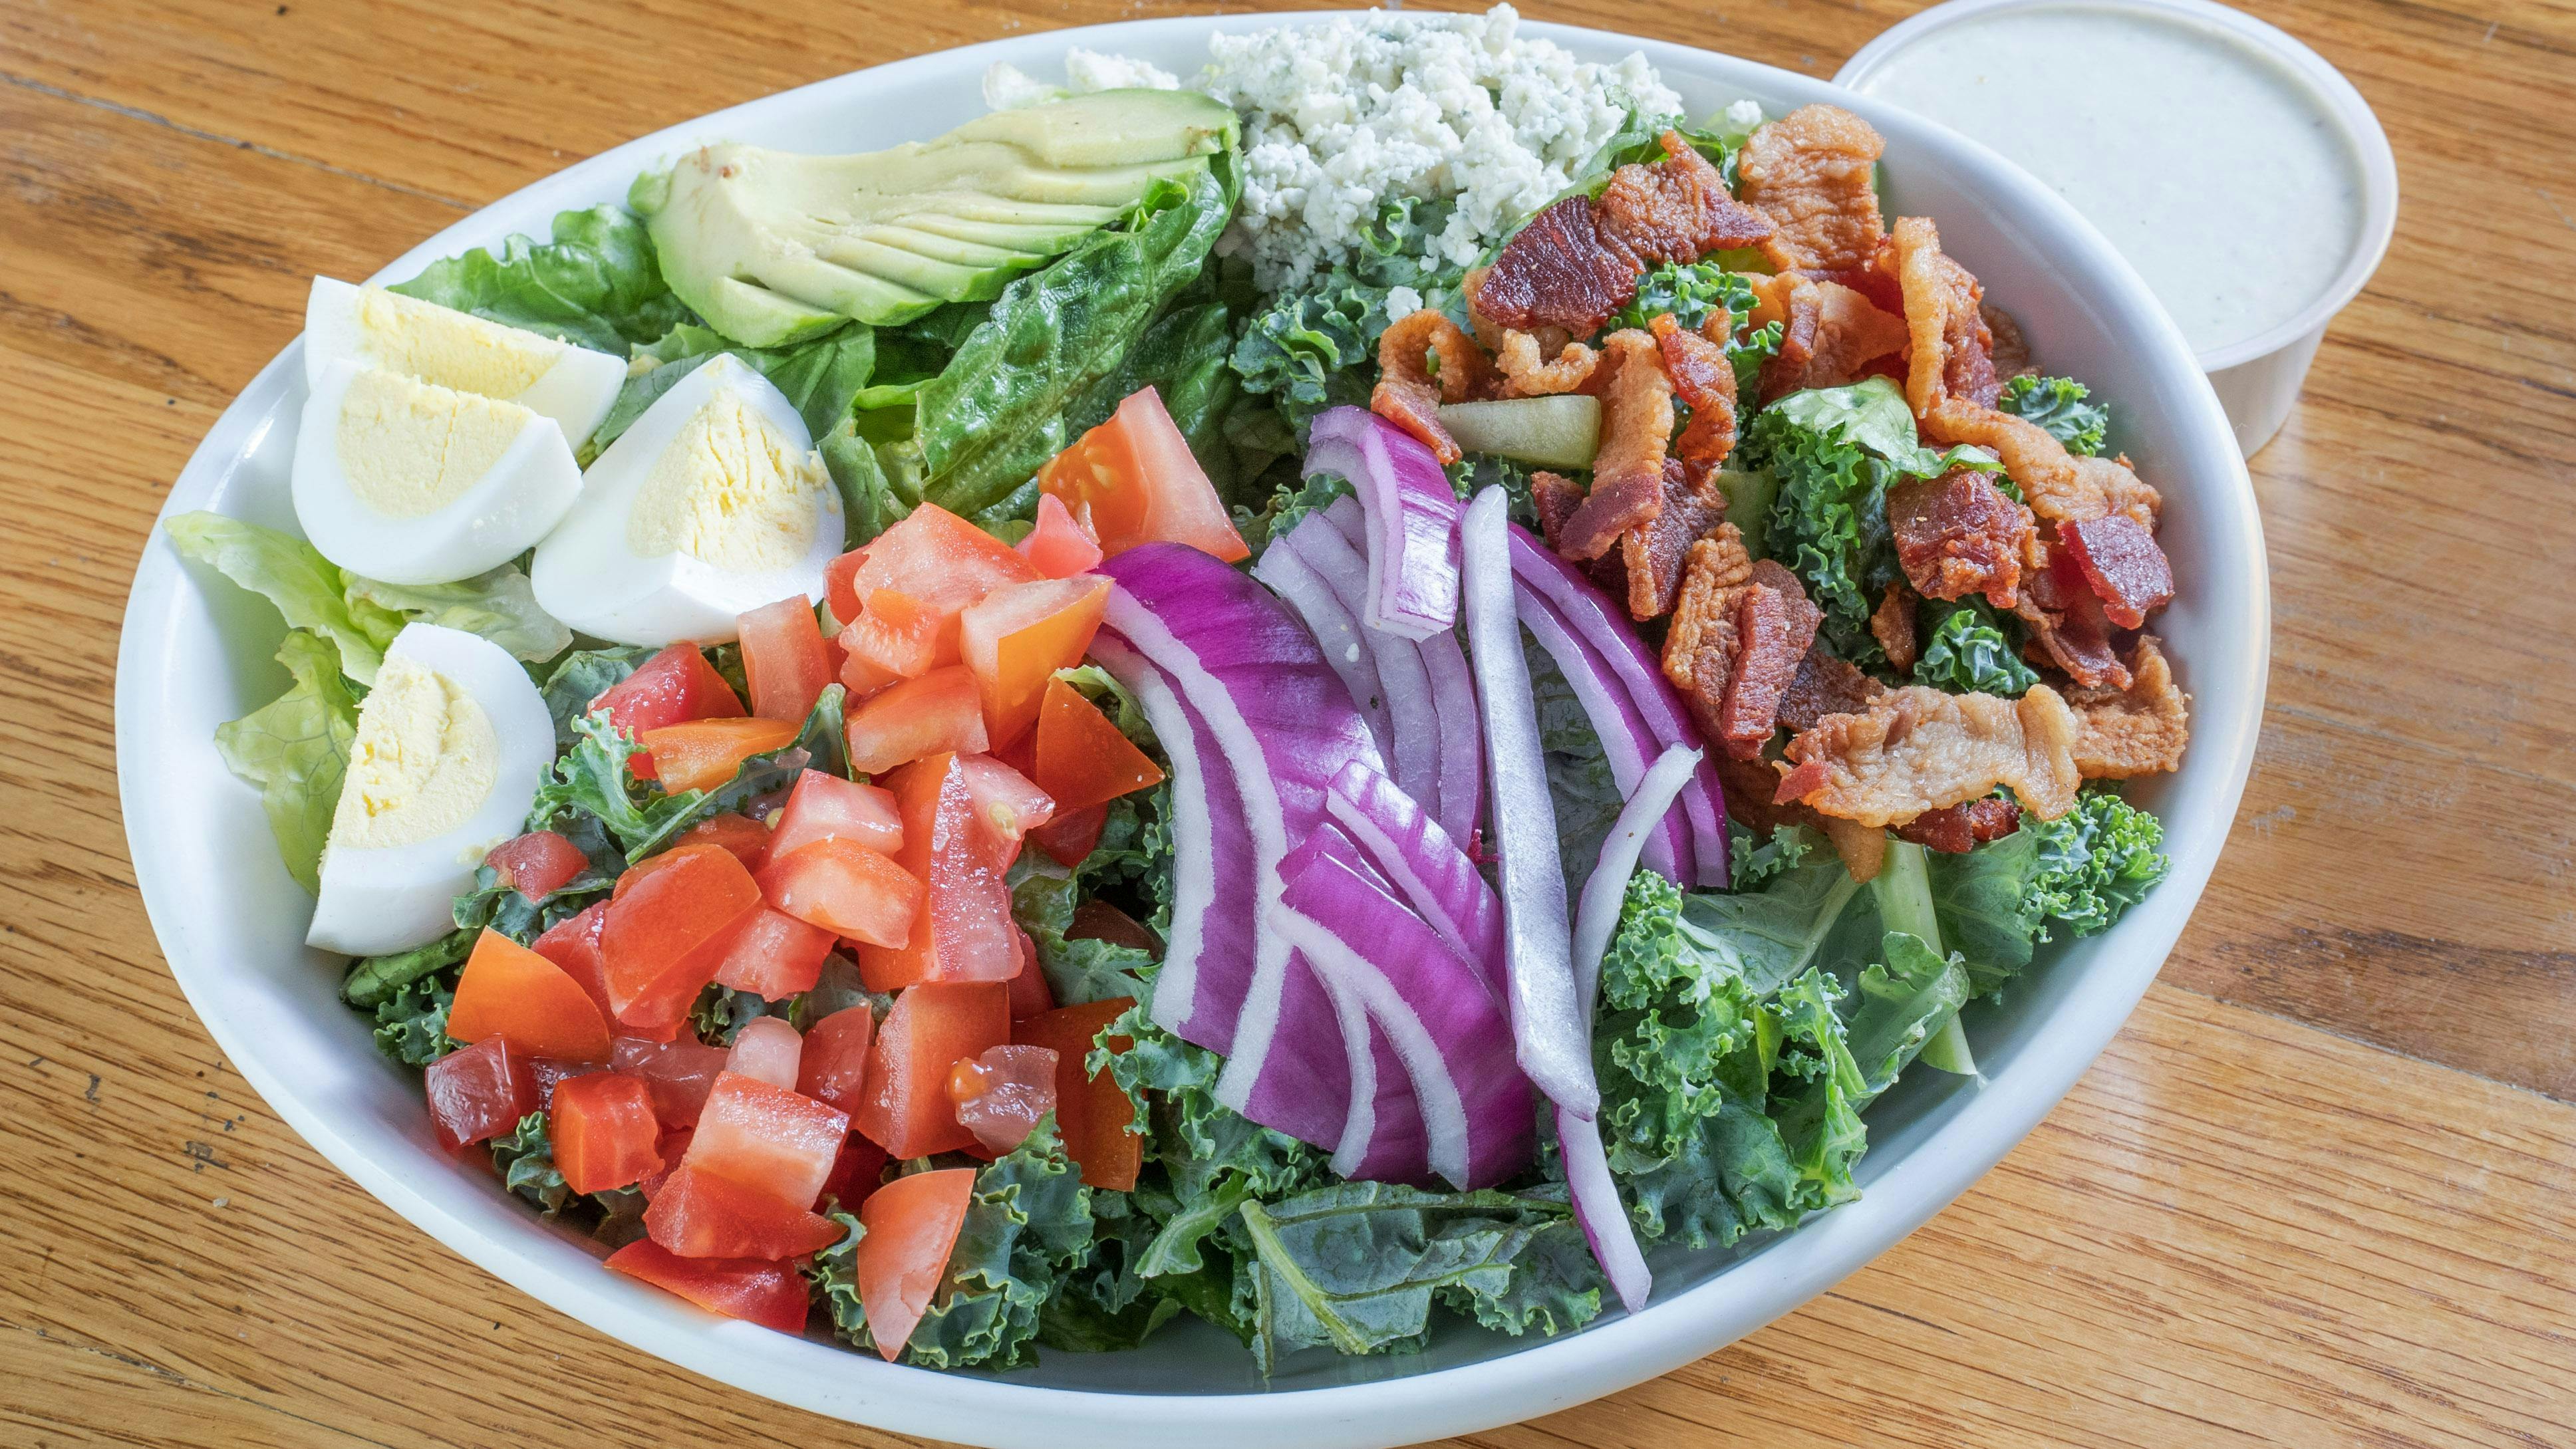 Cobb Salad from Austin Chicken Sandwich - Burnet Rd in Austin, TX